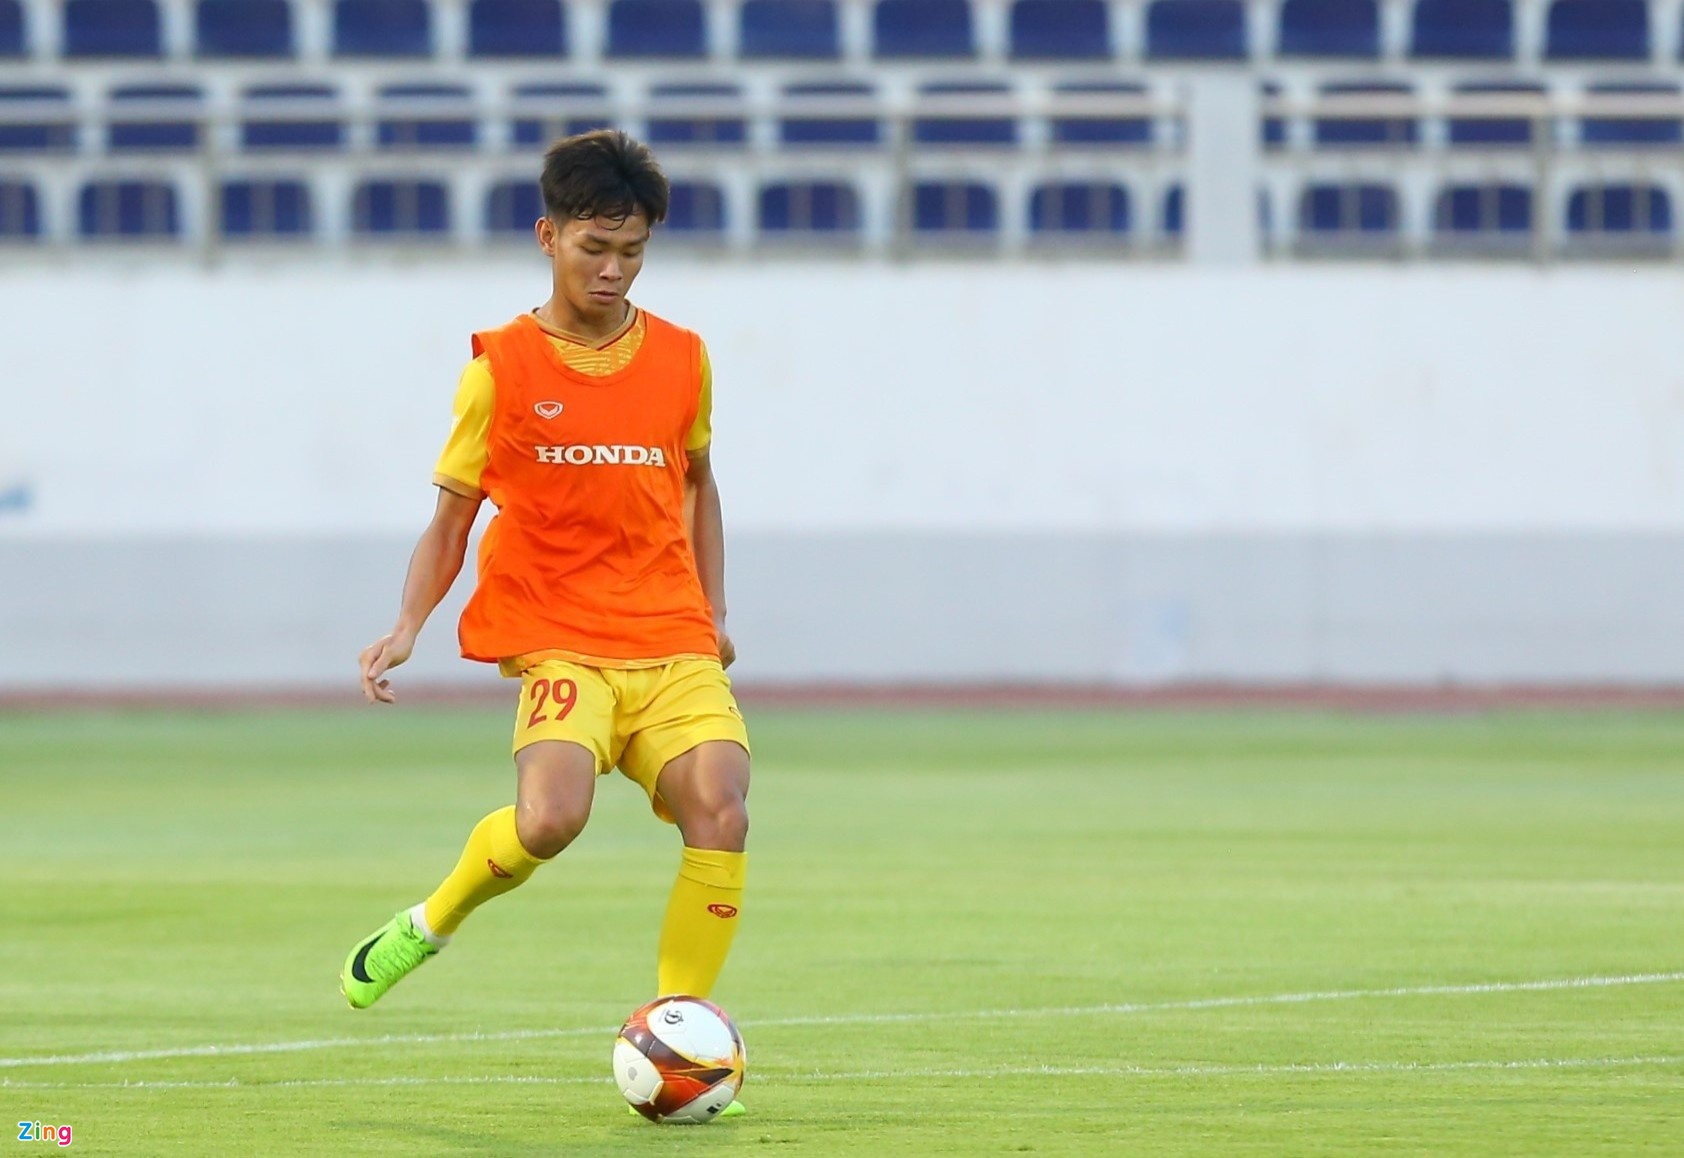 Tranh cãi khi U22 Việt Nam loại người ghi nhiều bàn nhất ở V-League - Bóng Đá